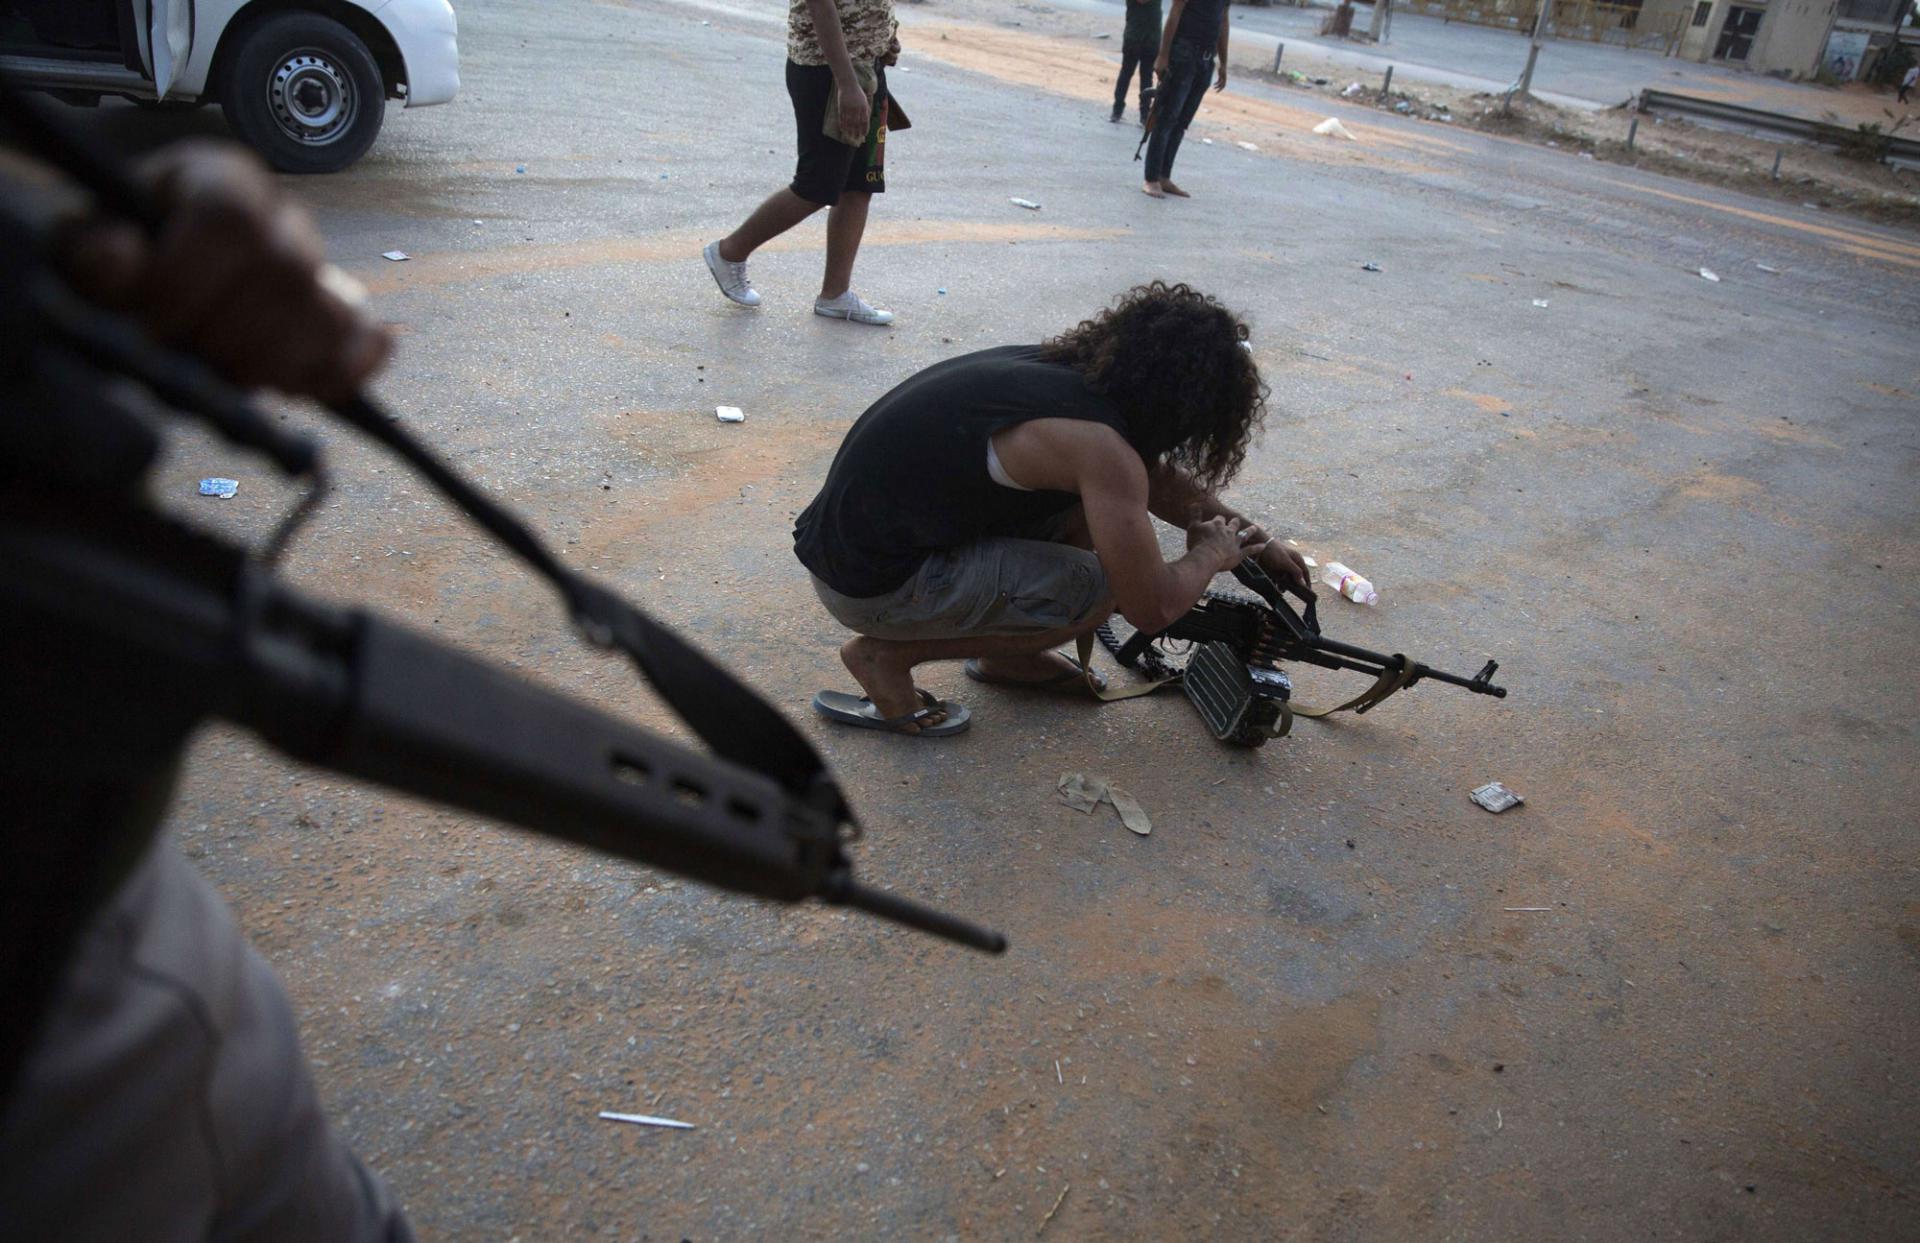 جماعات مسلحة في ليبيا